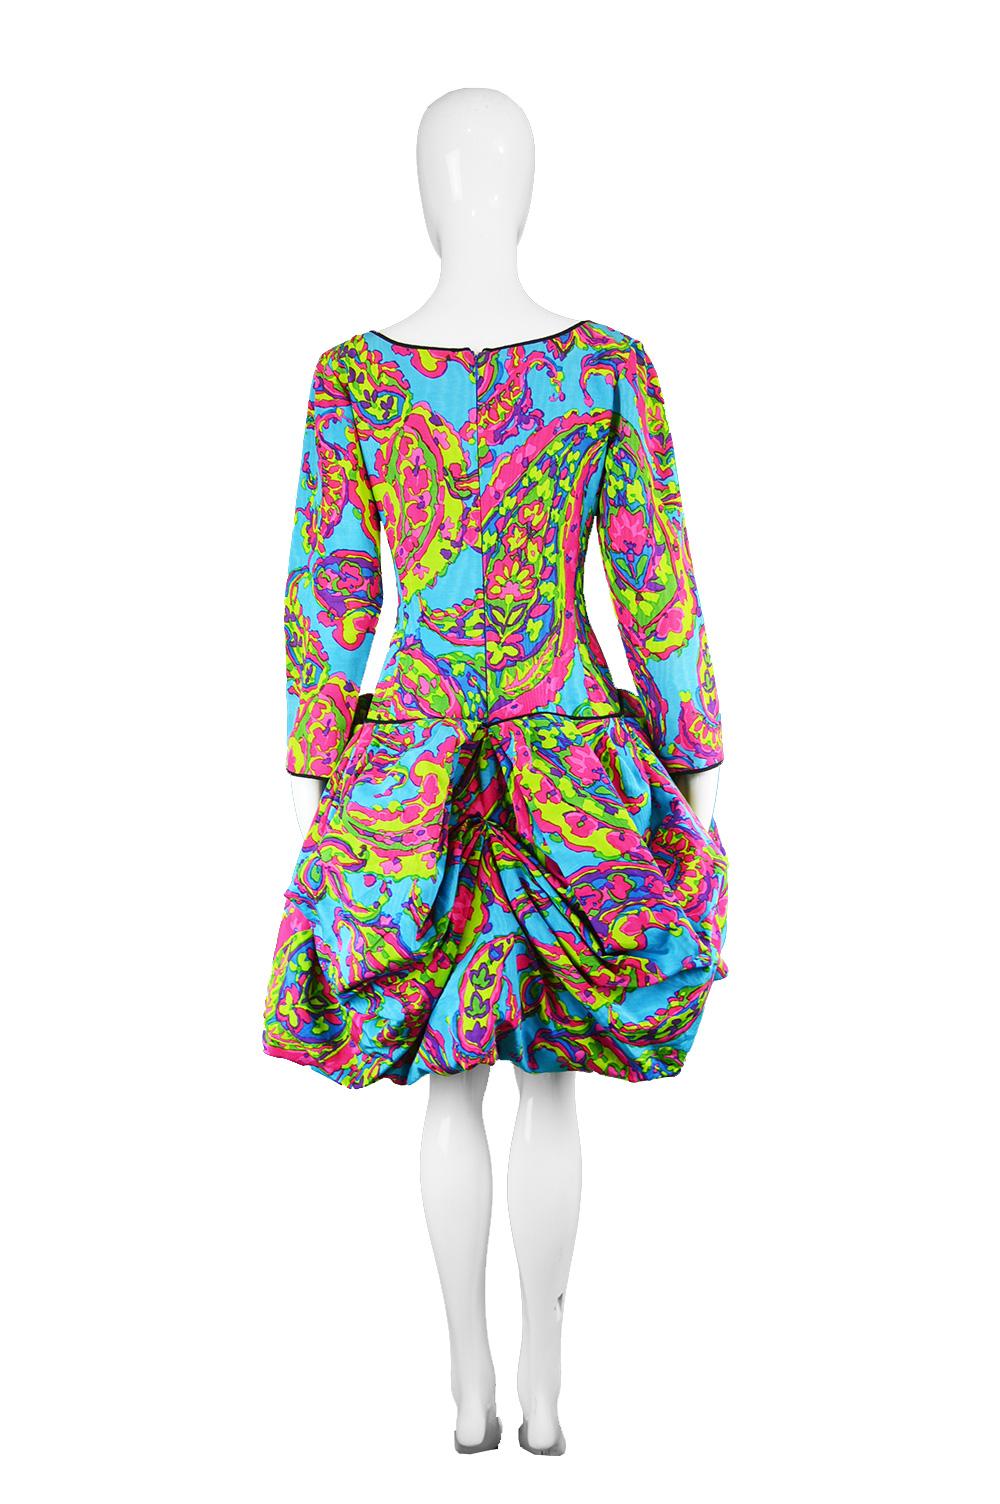 Yves Saint Laurent Rive Gauche Vintage Multicolored Pouf Bustle Dress, 1980s 1